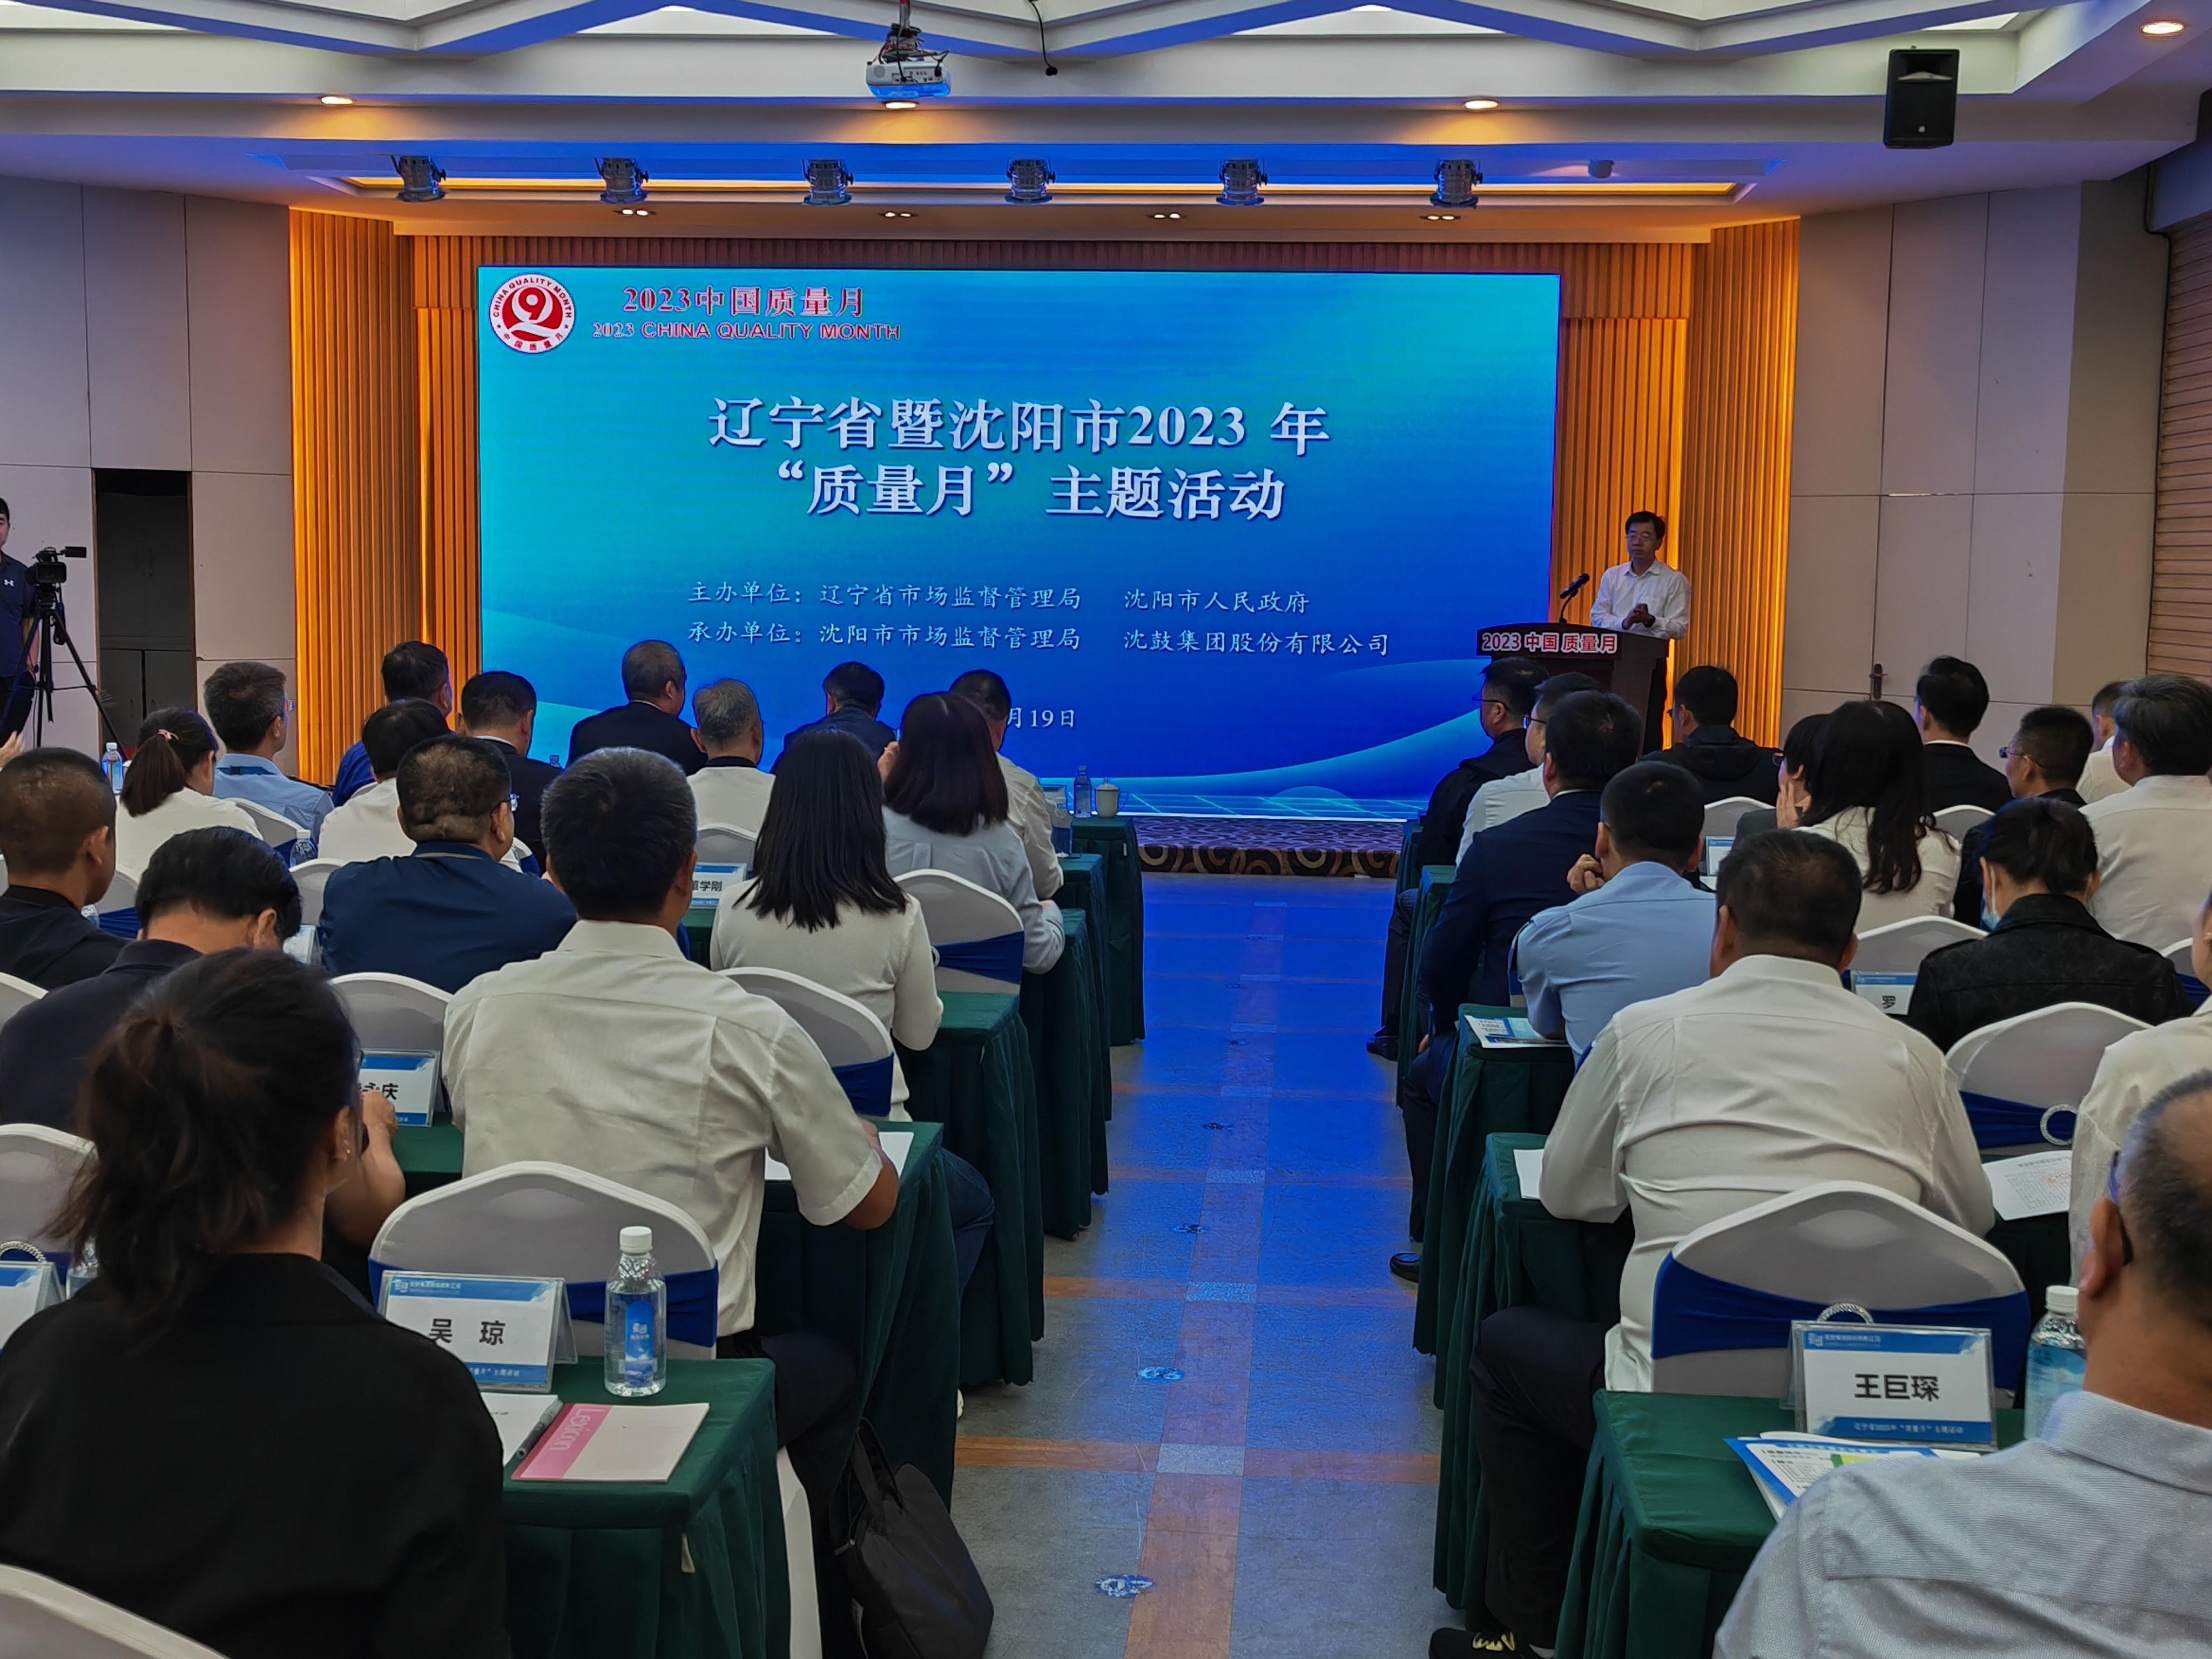 增强品质意见 增长高品质睁开丨辽宁省宣告2022年品质情景白皮书